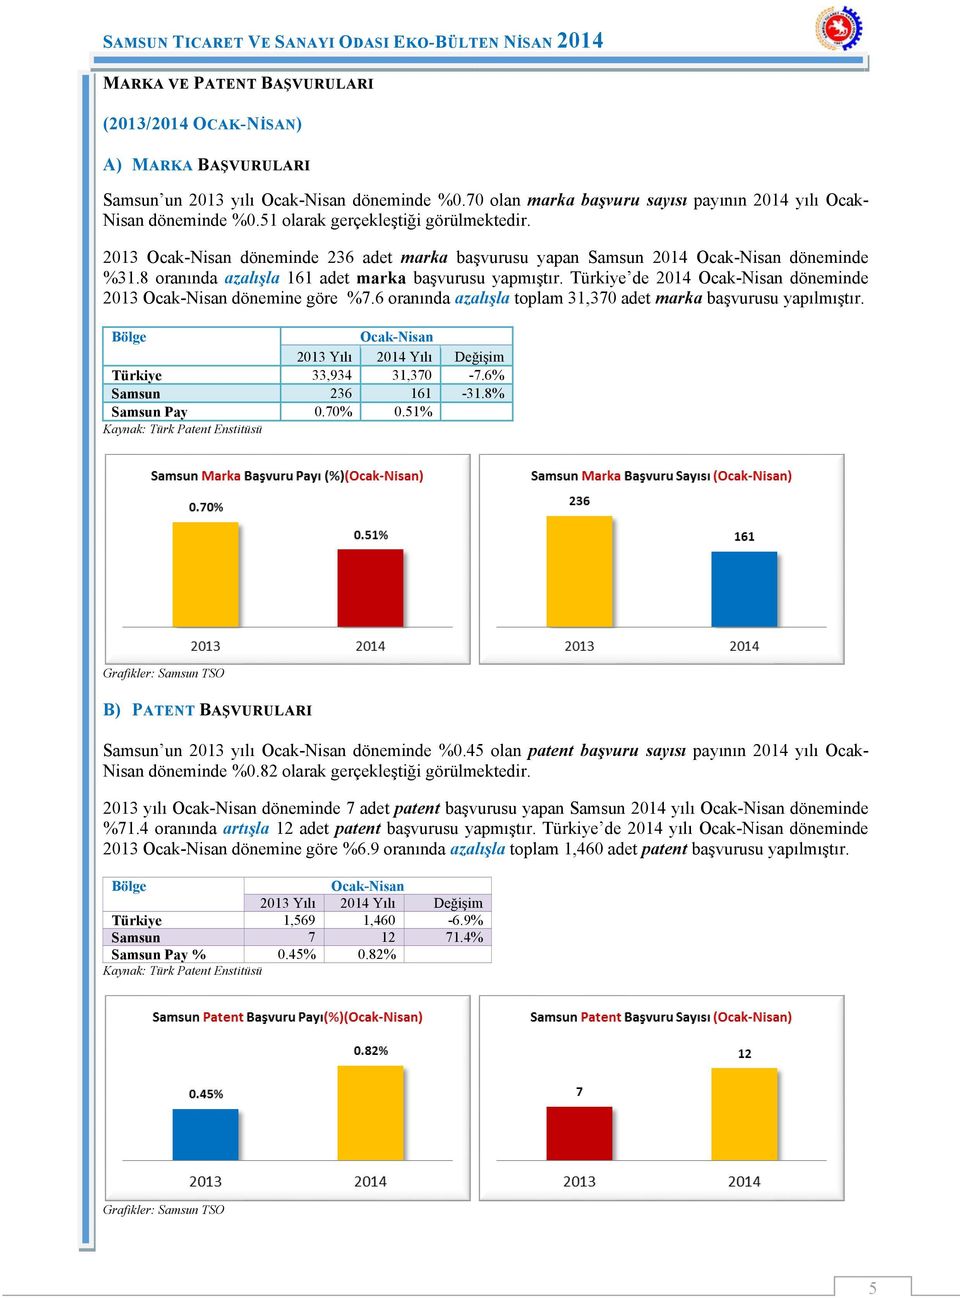 Türkiye de 2014 Ocak-Nisan döneminde 2013 Ocak-Nisan dönemine göre %7.6 oranında azalışla toplam 31,370 adet marka başvurusu yapılmıştır.